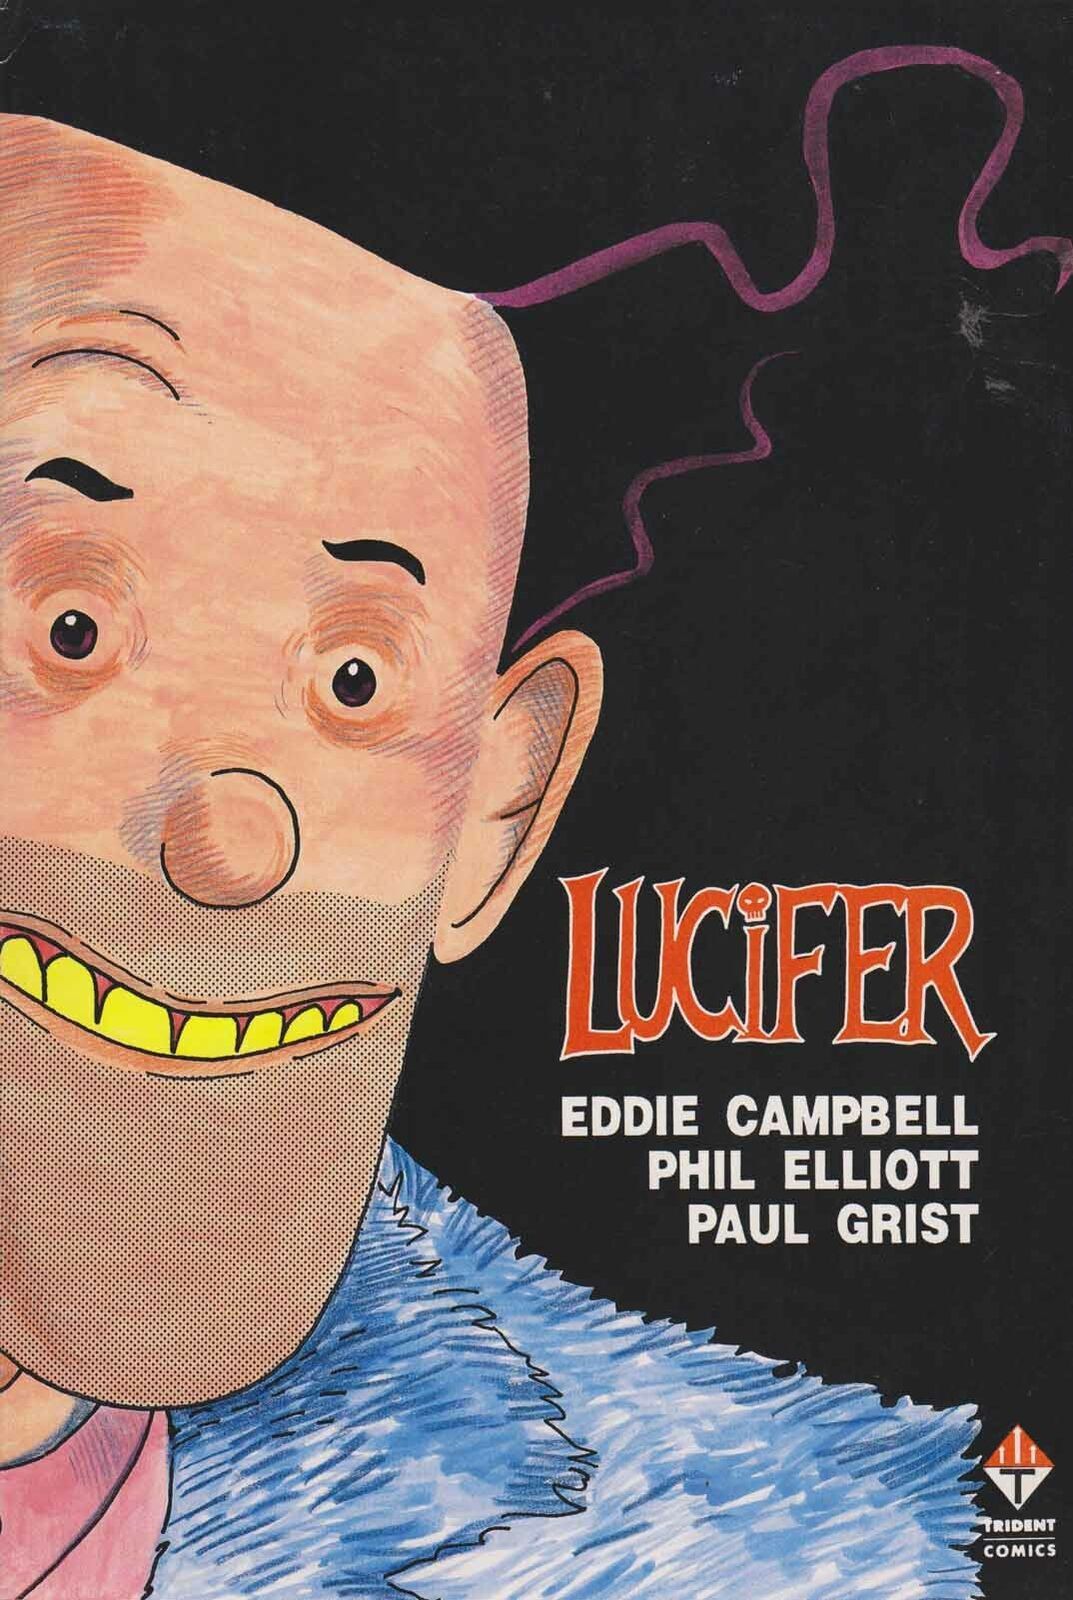 LUCIFER 1-3 EDDIE CAMPBELL 1990 TRIDENT